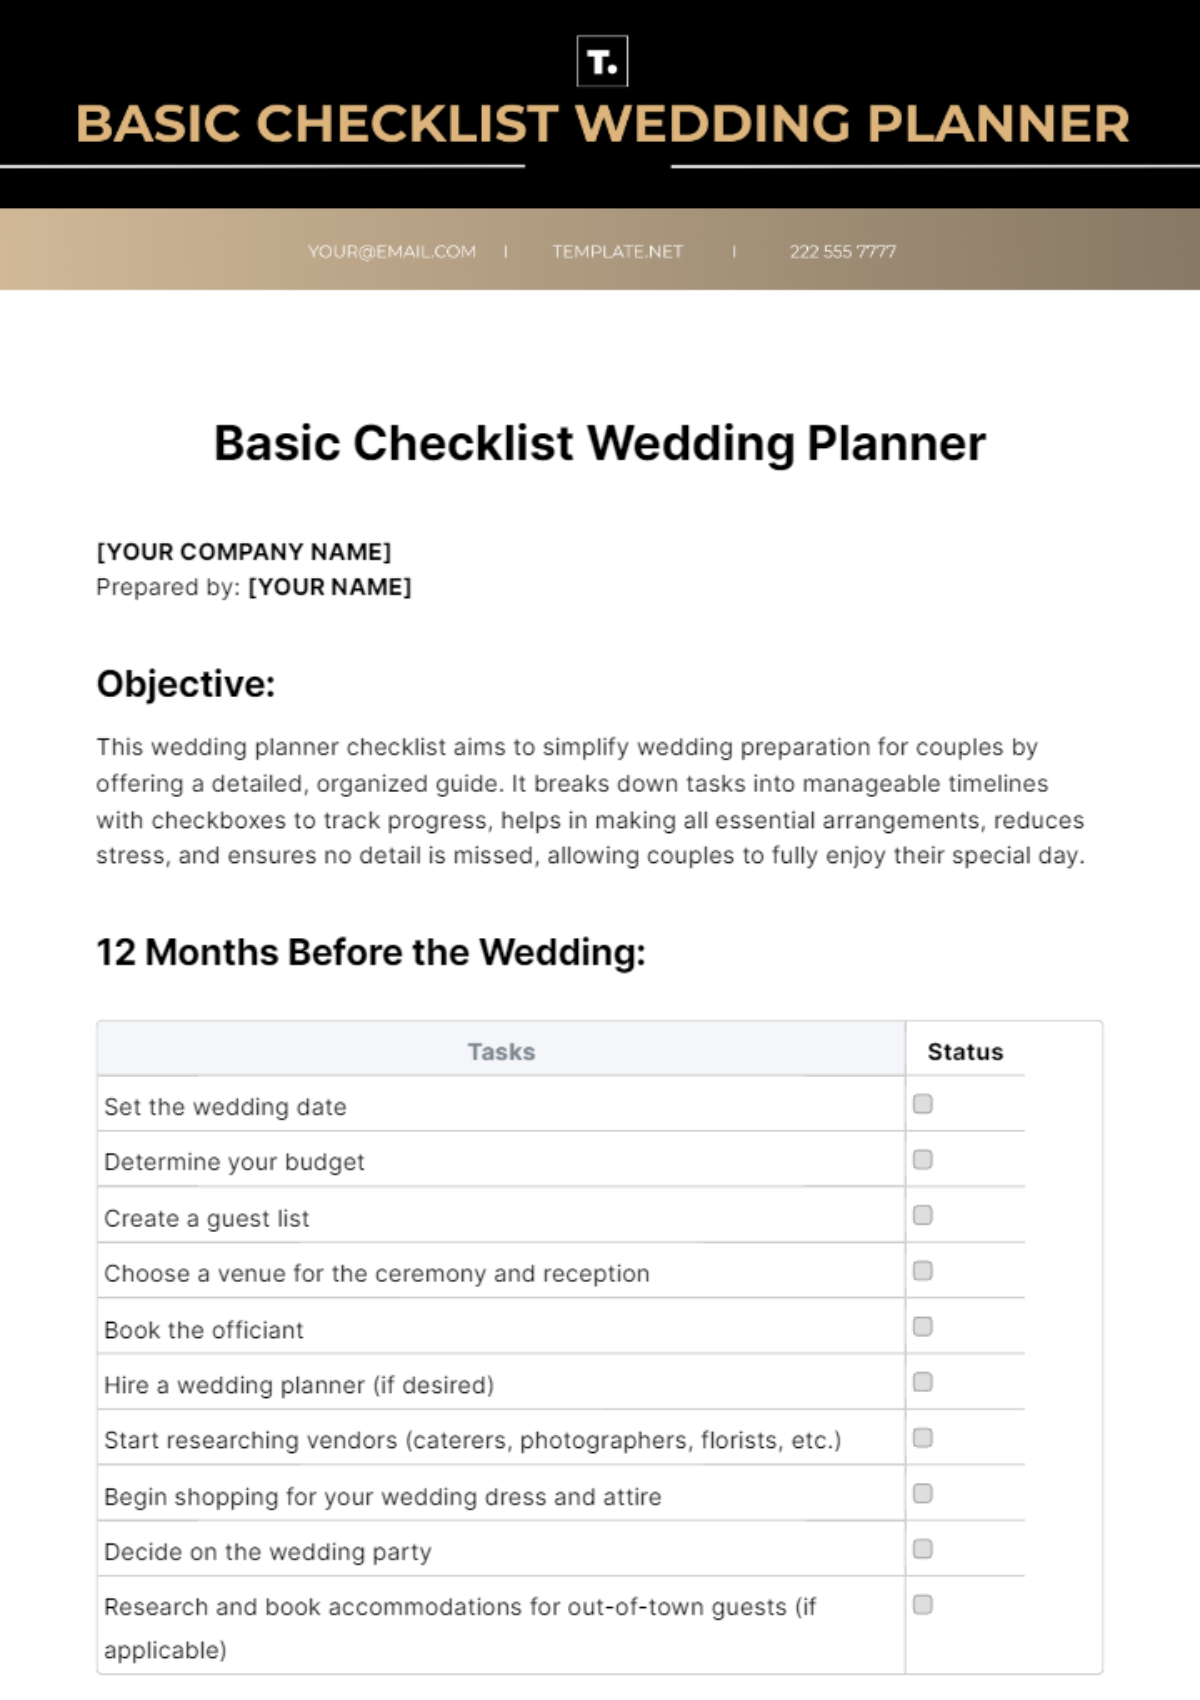 Free Basic Checklist Wedding Planner Template